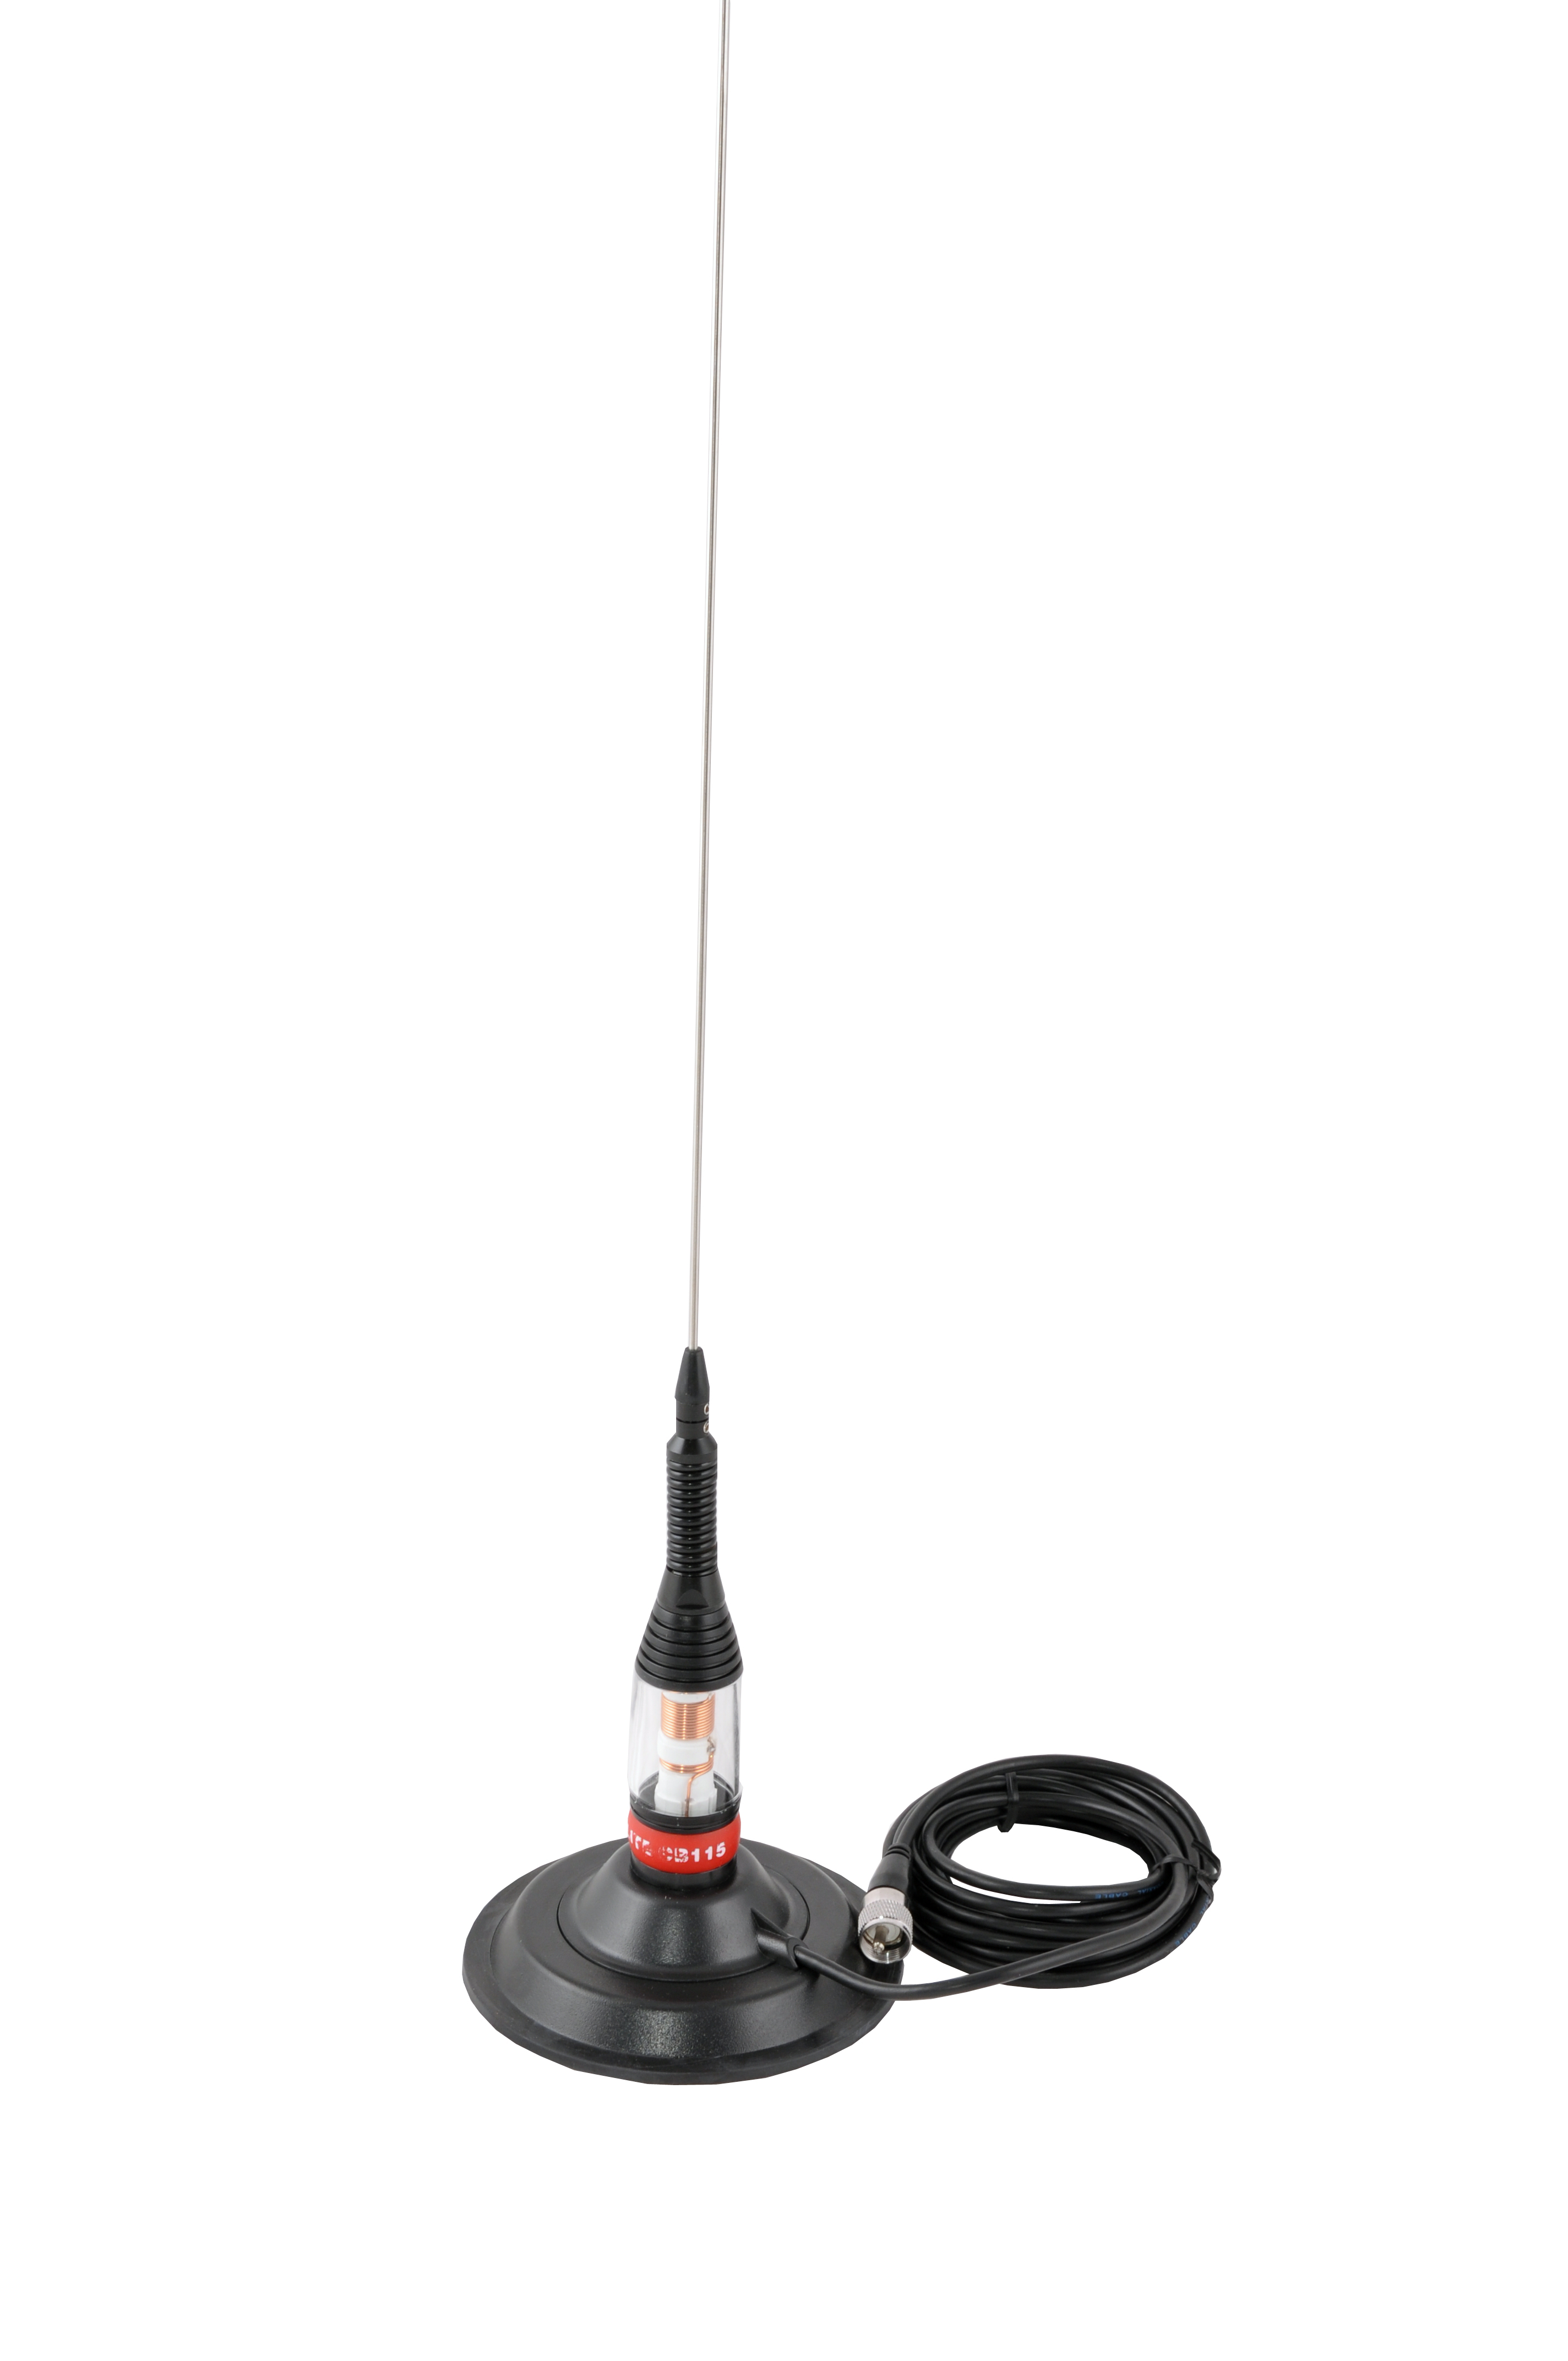 Antene și suporturi de fixare pentru antene - Antenă stație radio CB Sunker 115 cu magnet, fomcoshop.ro